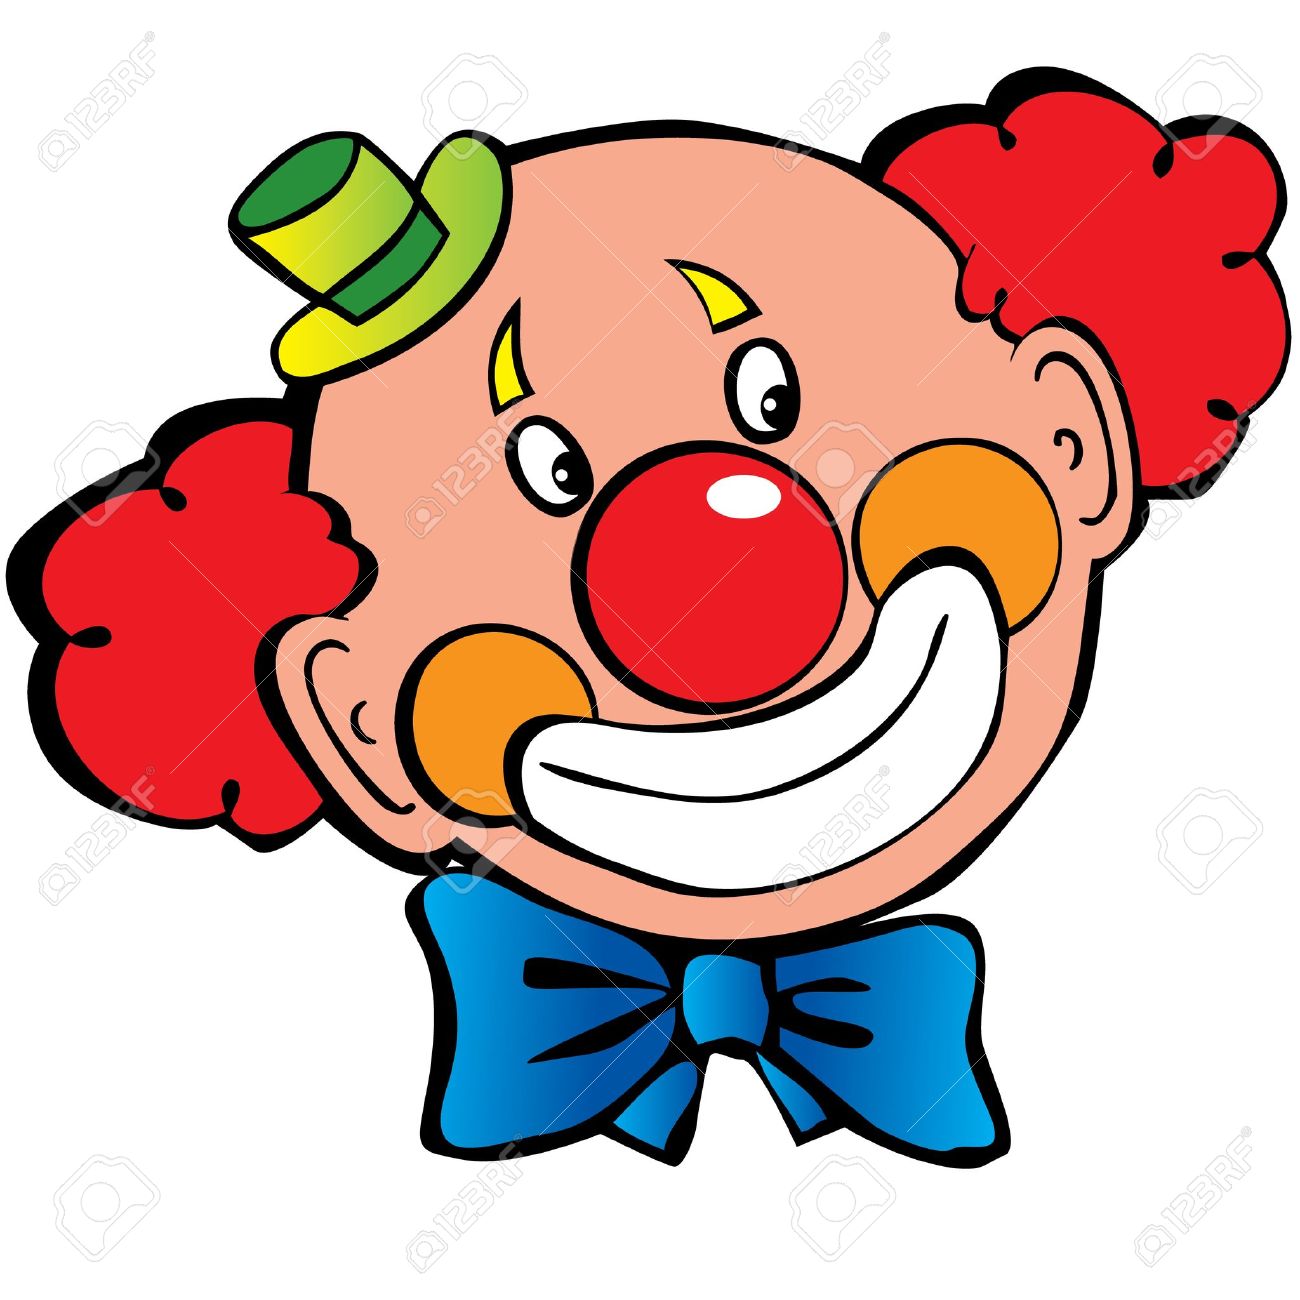 clown face: Happy clown .